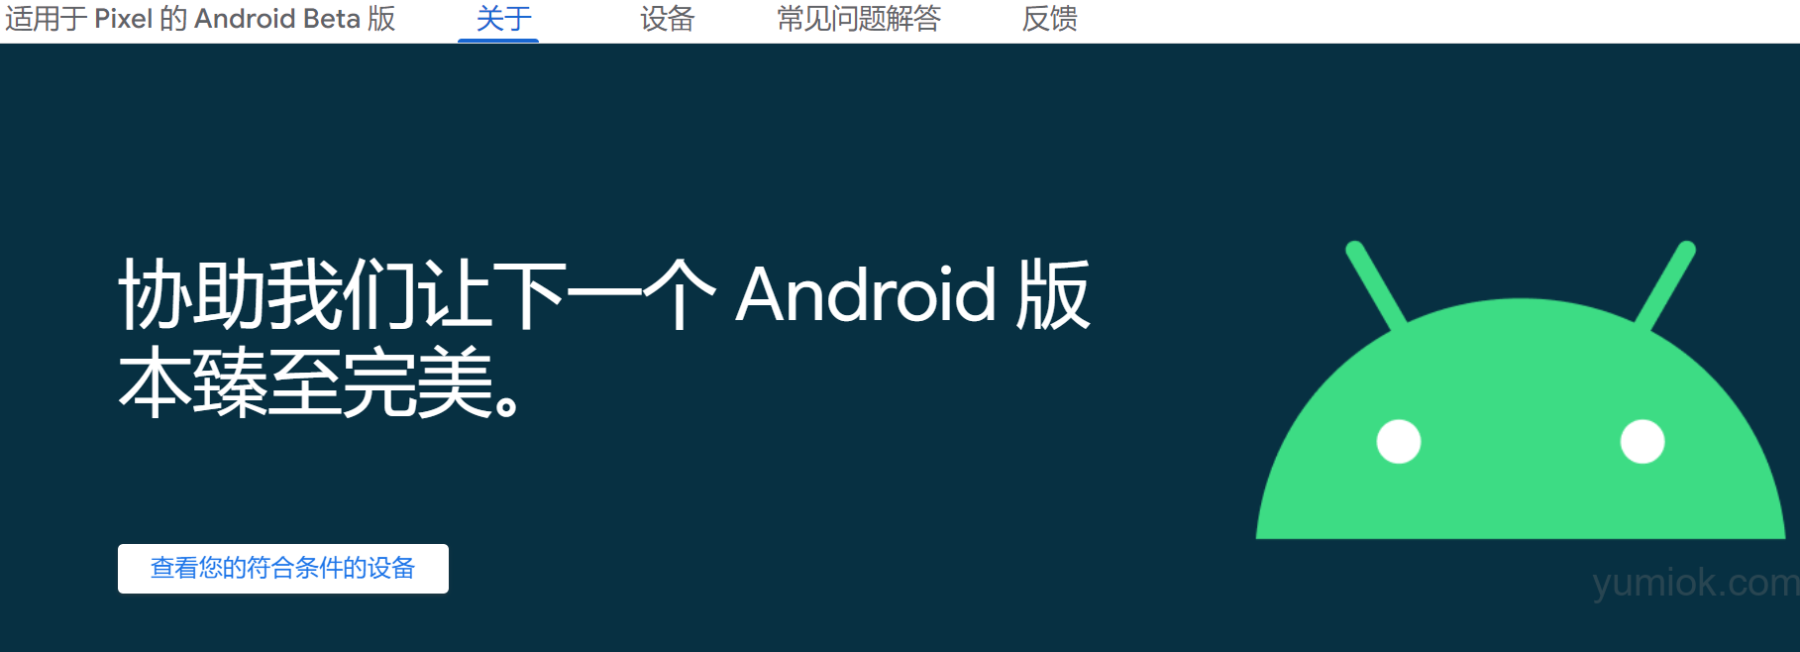 豪华顶配：android 15即将发布，携谷歌gemini大模型 附相关入口地址